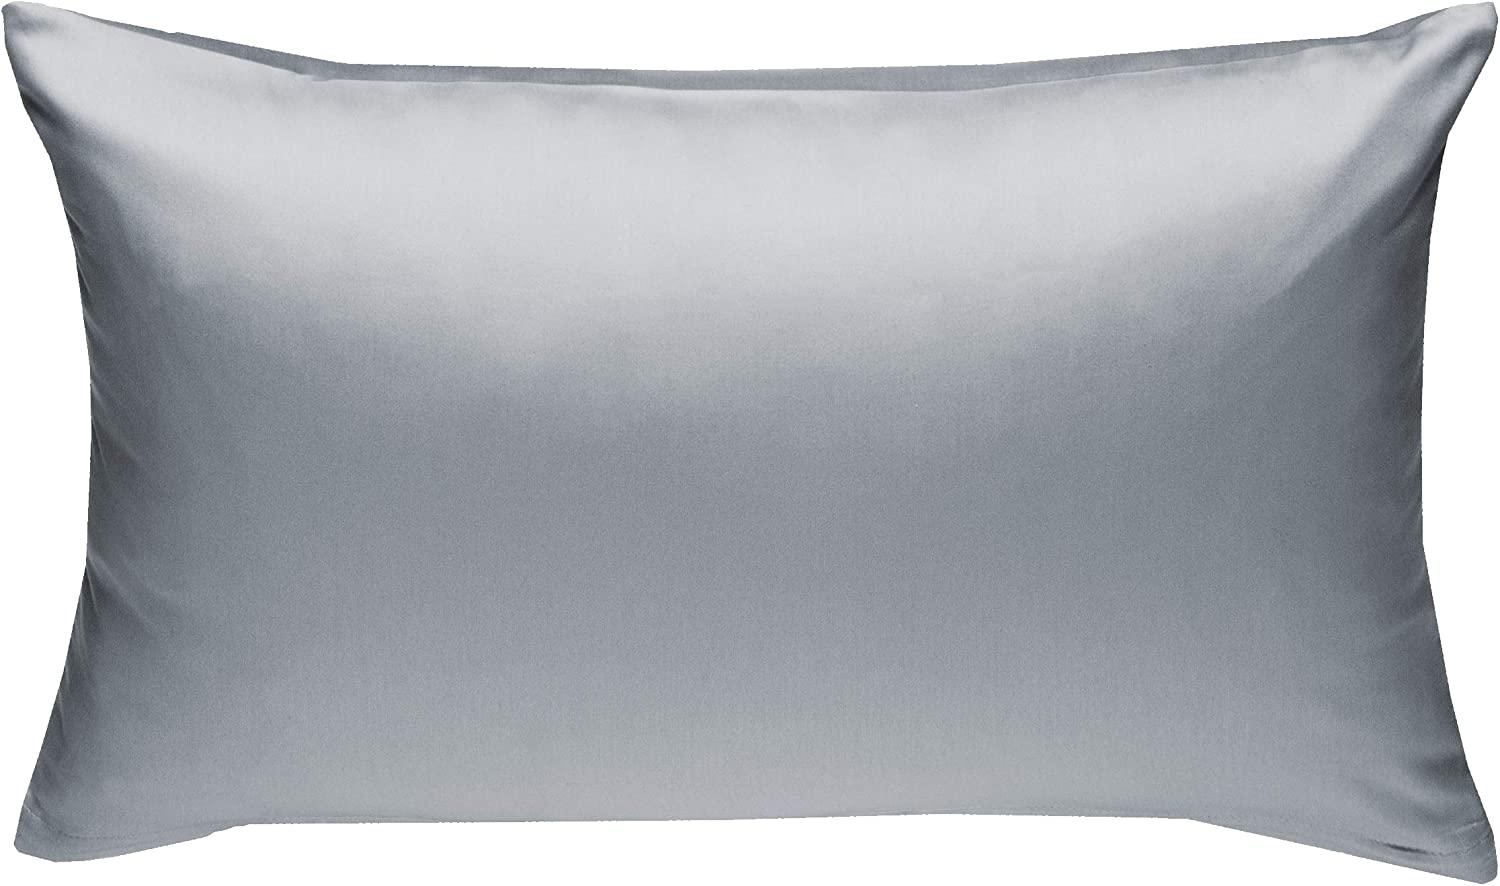 Bettwaesche-mit-Stil Mako-Satin / Baumwollsatin Bettwäsche uni / einfarbig grau Kissenbezug 40x60 cm Bild 1